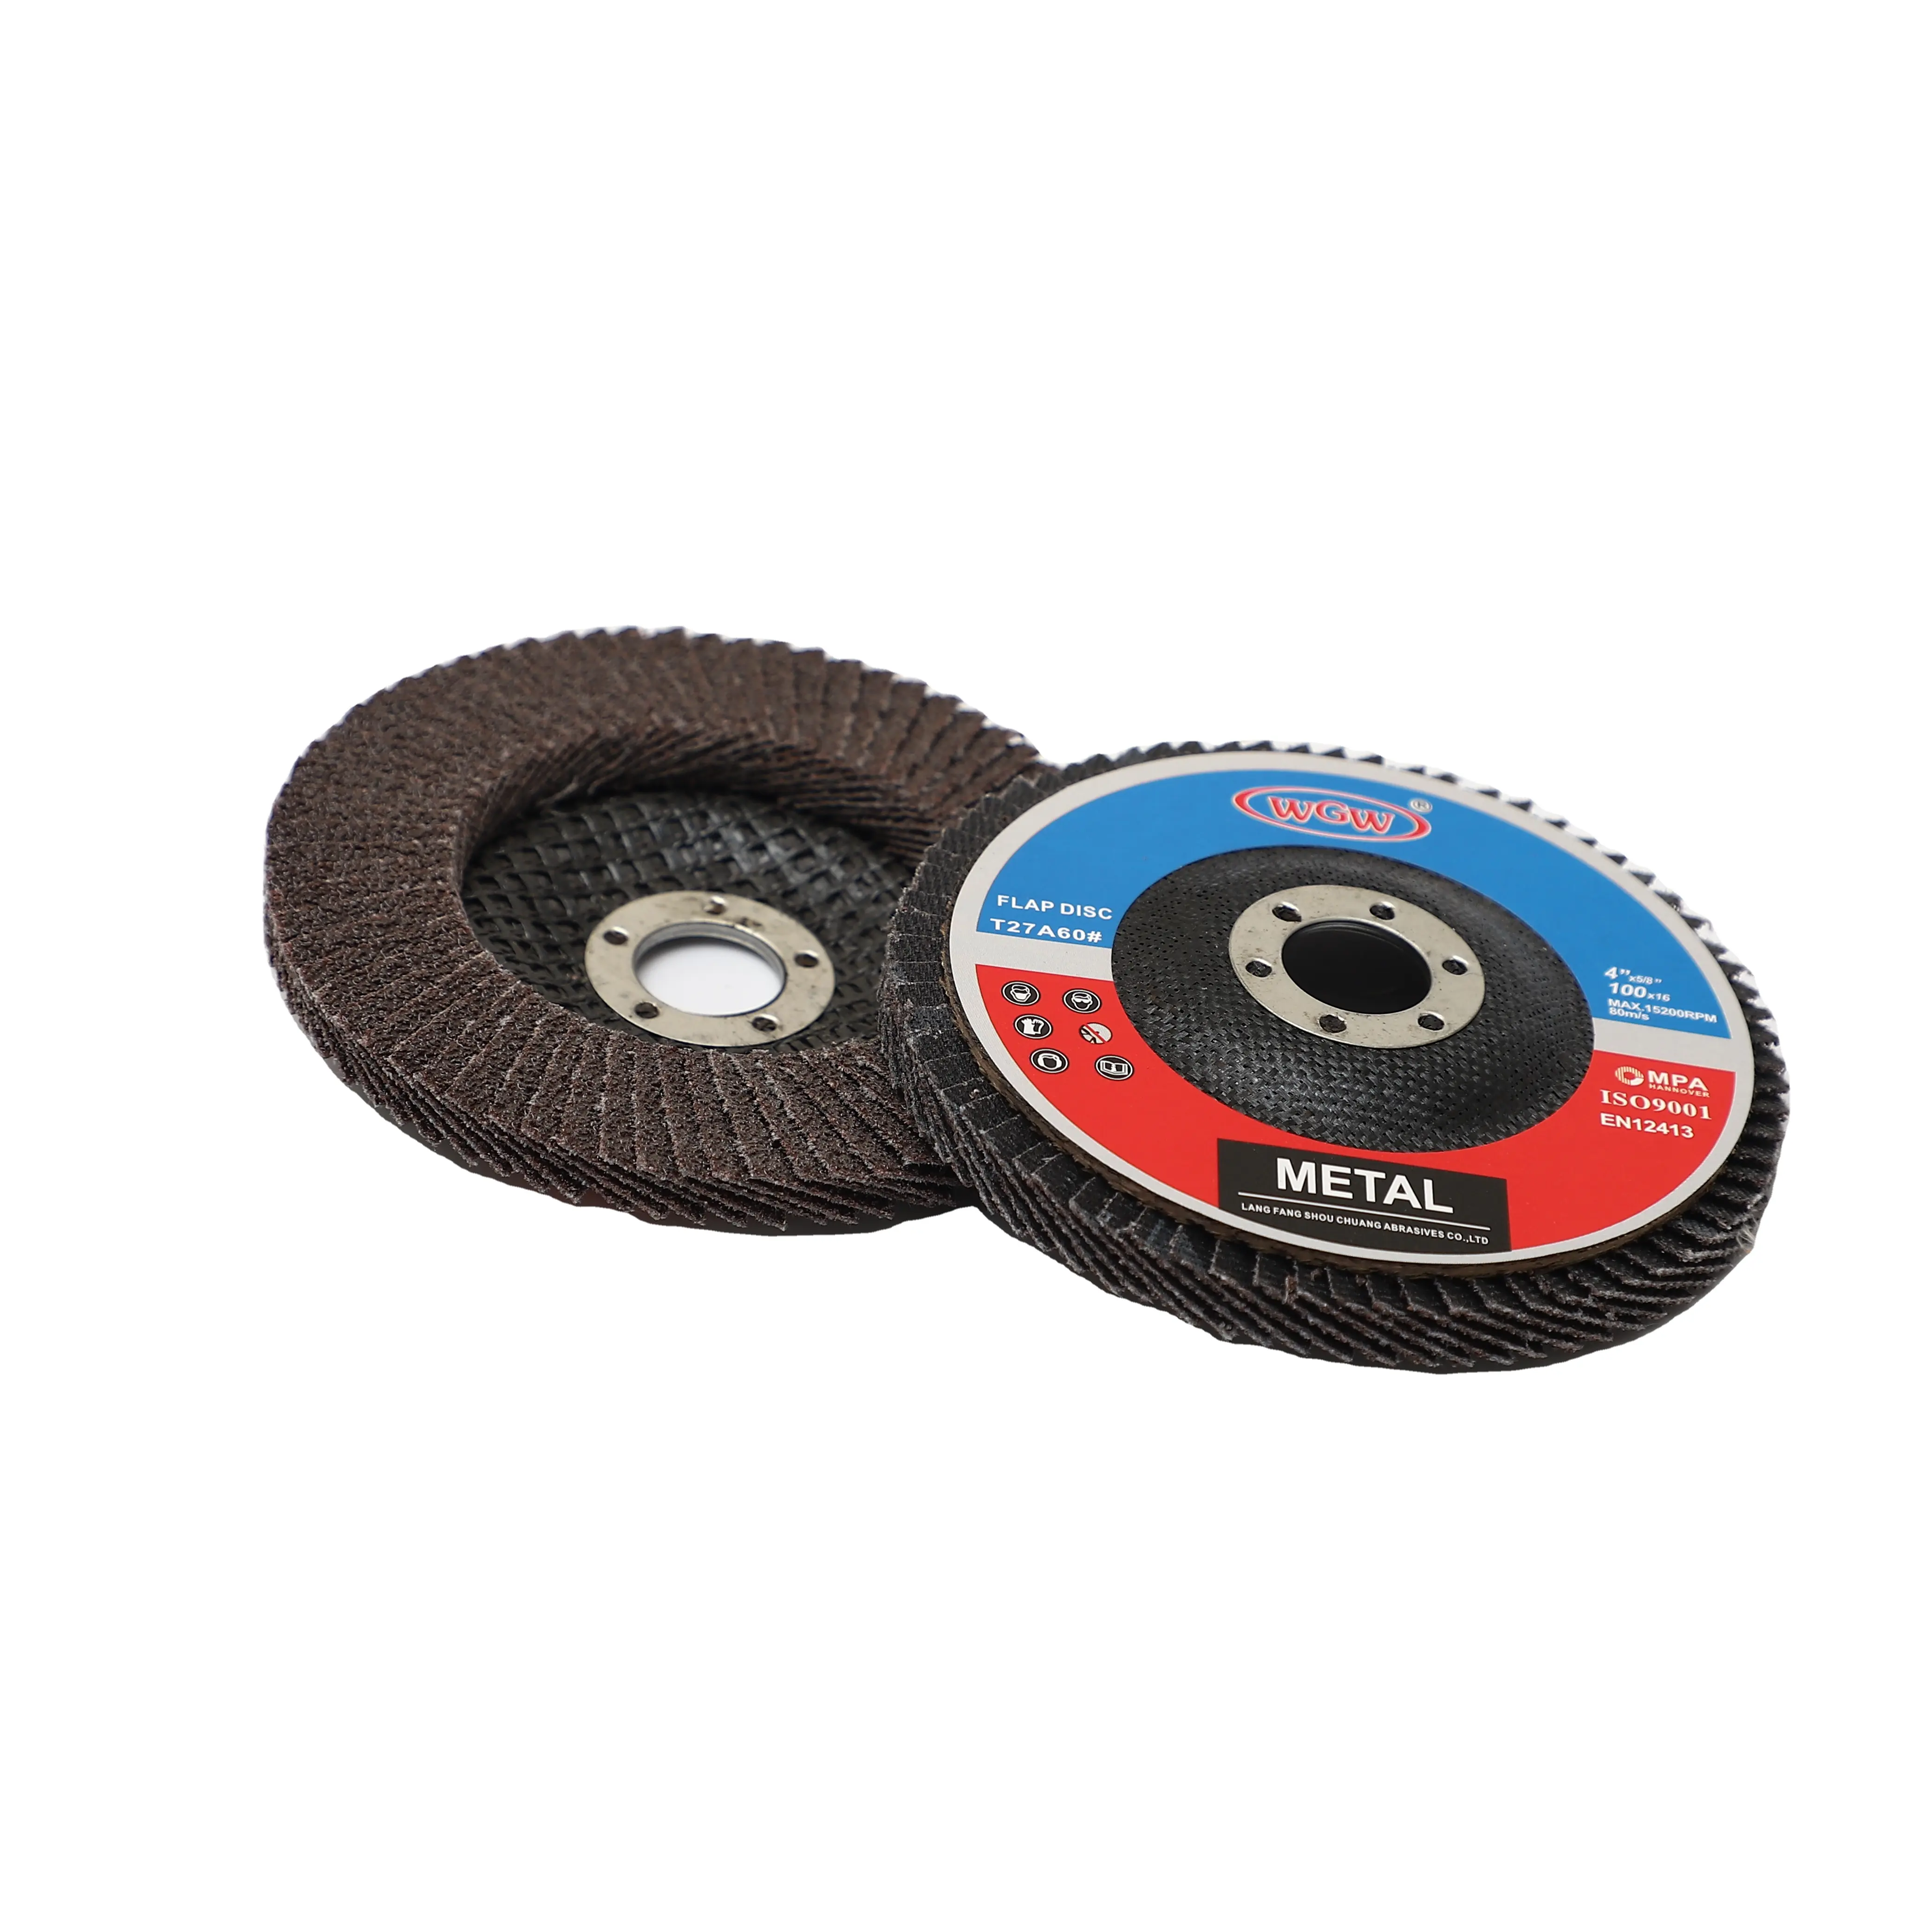 Aluminum abrasive flap disc 115mm 40 grit grinding wheel disc for Grinding weld sanding